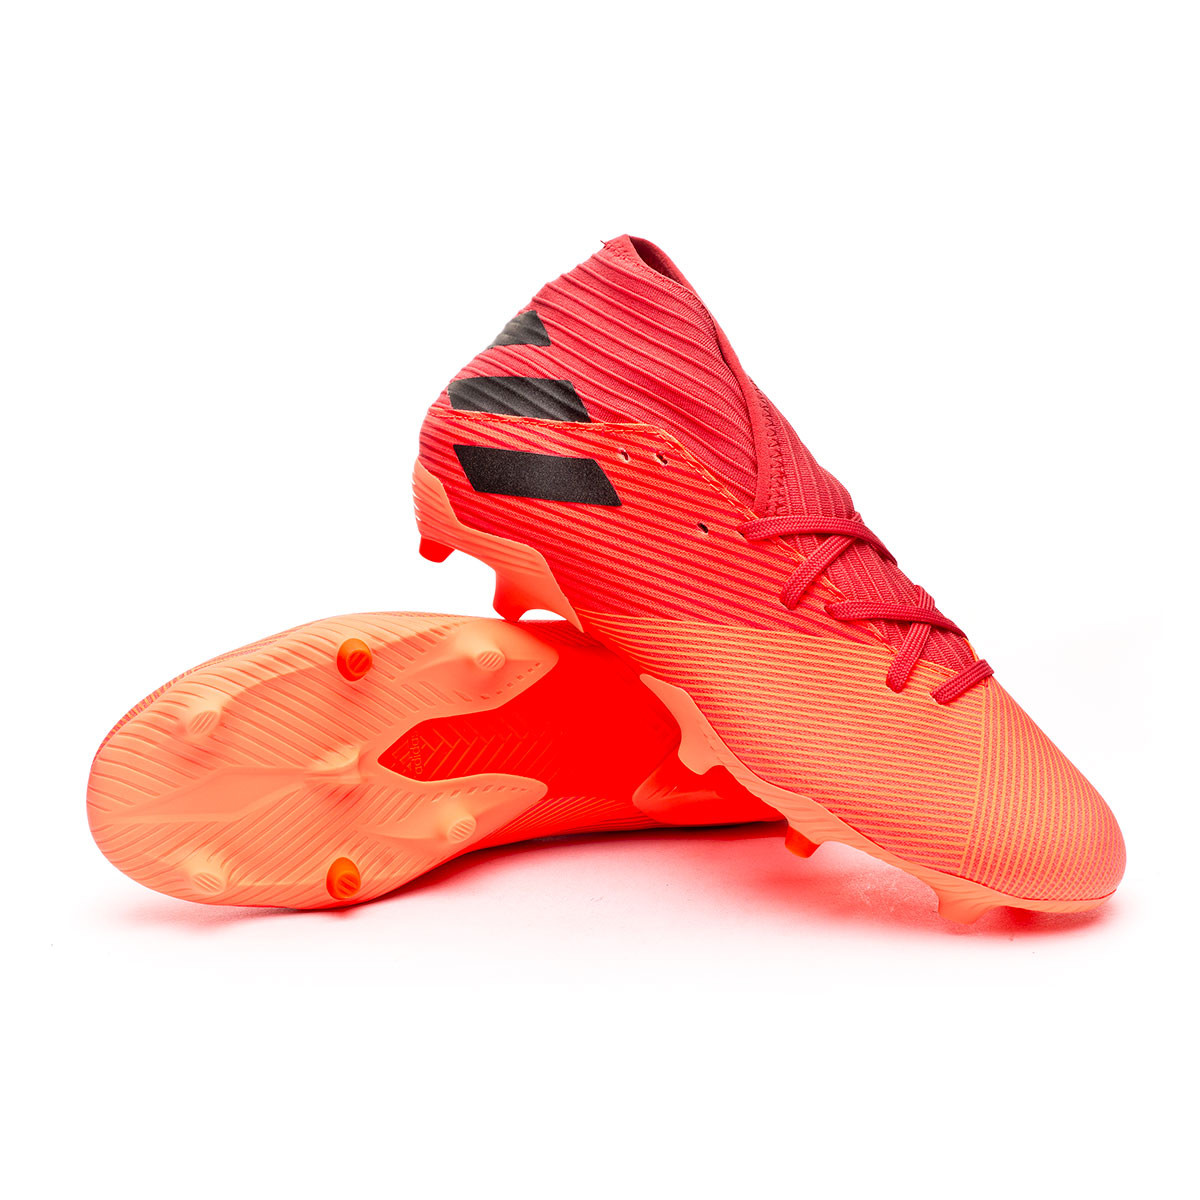 Football Boots adidas Nemeziz 19.3 FG 